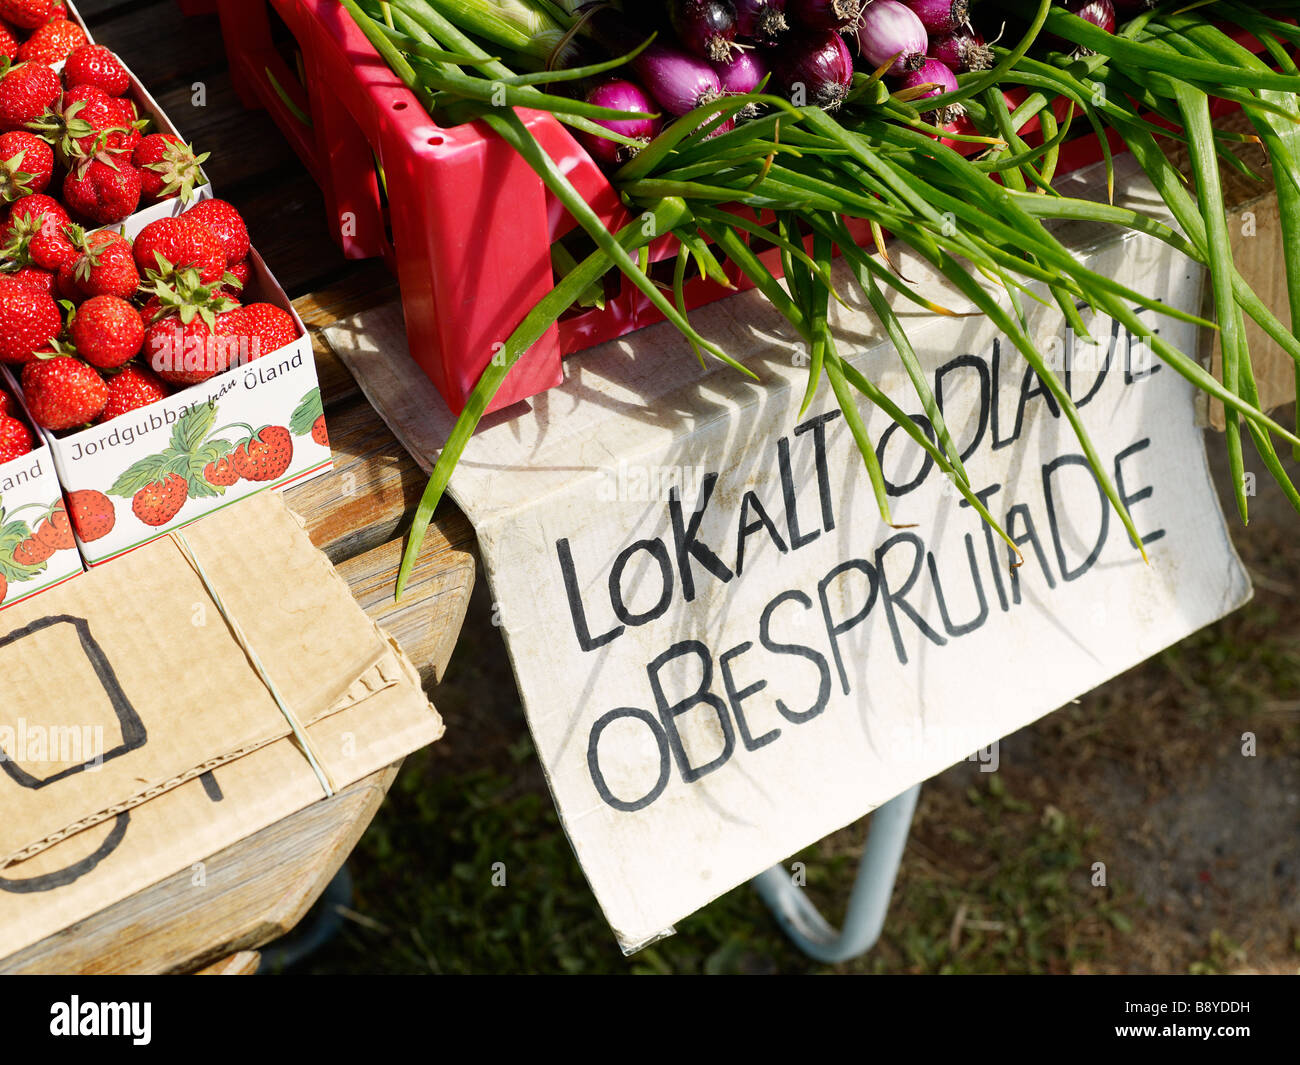 Venta producidas localmente y vegetales cultivados orgánicamente Öland en Suecia. Foto de stock